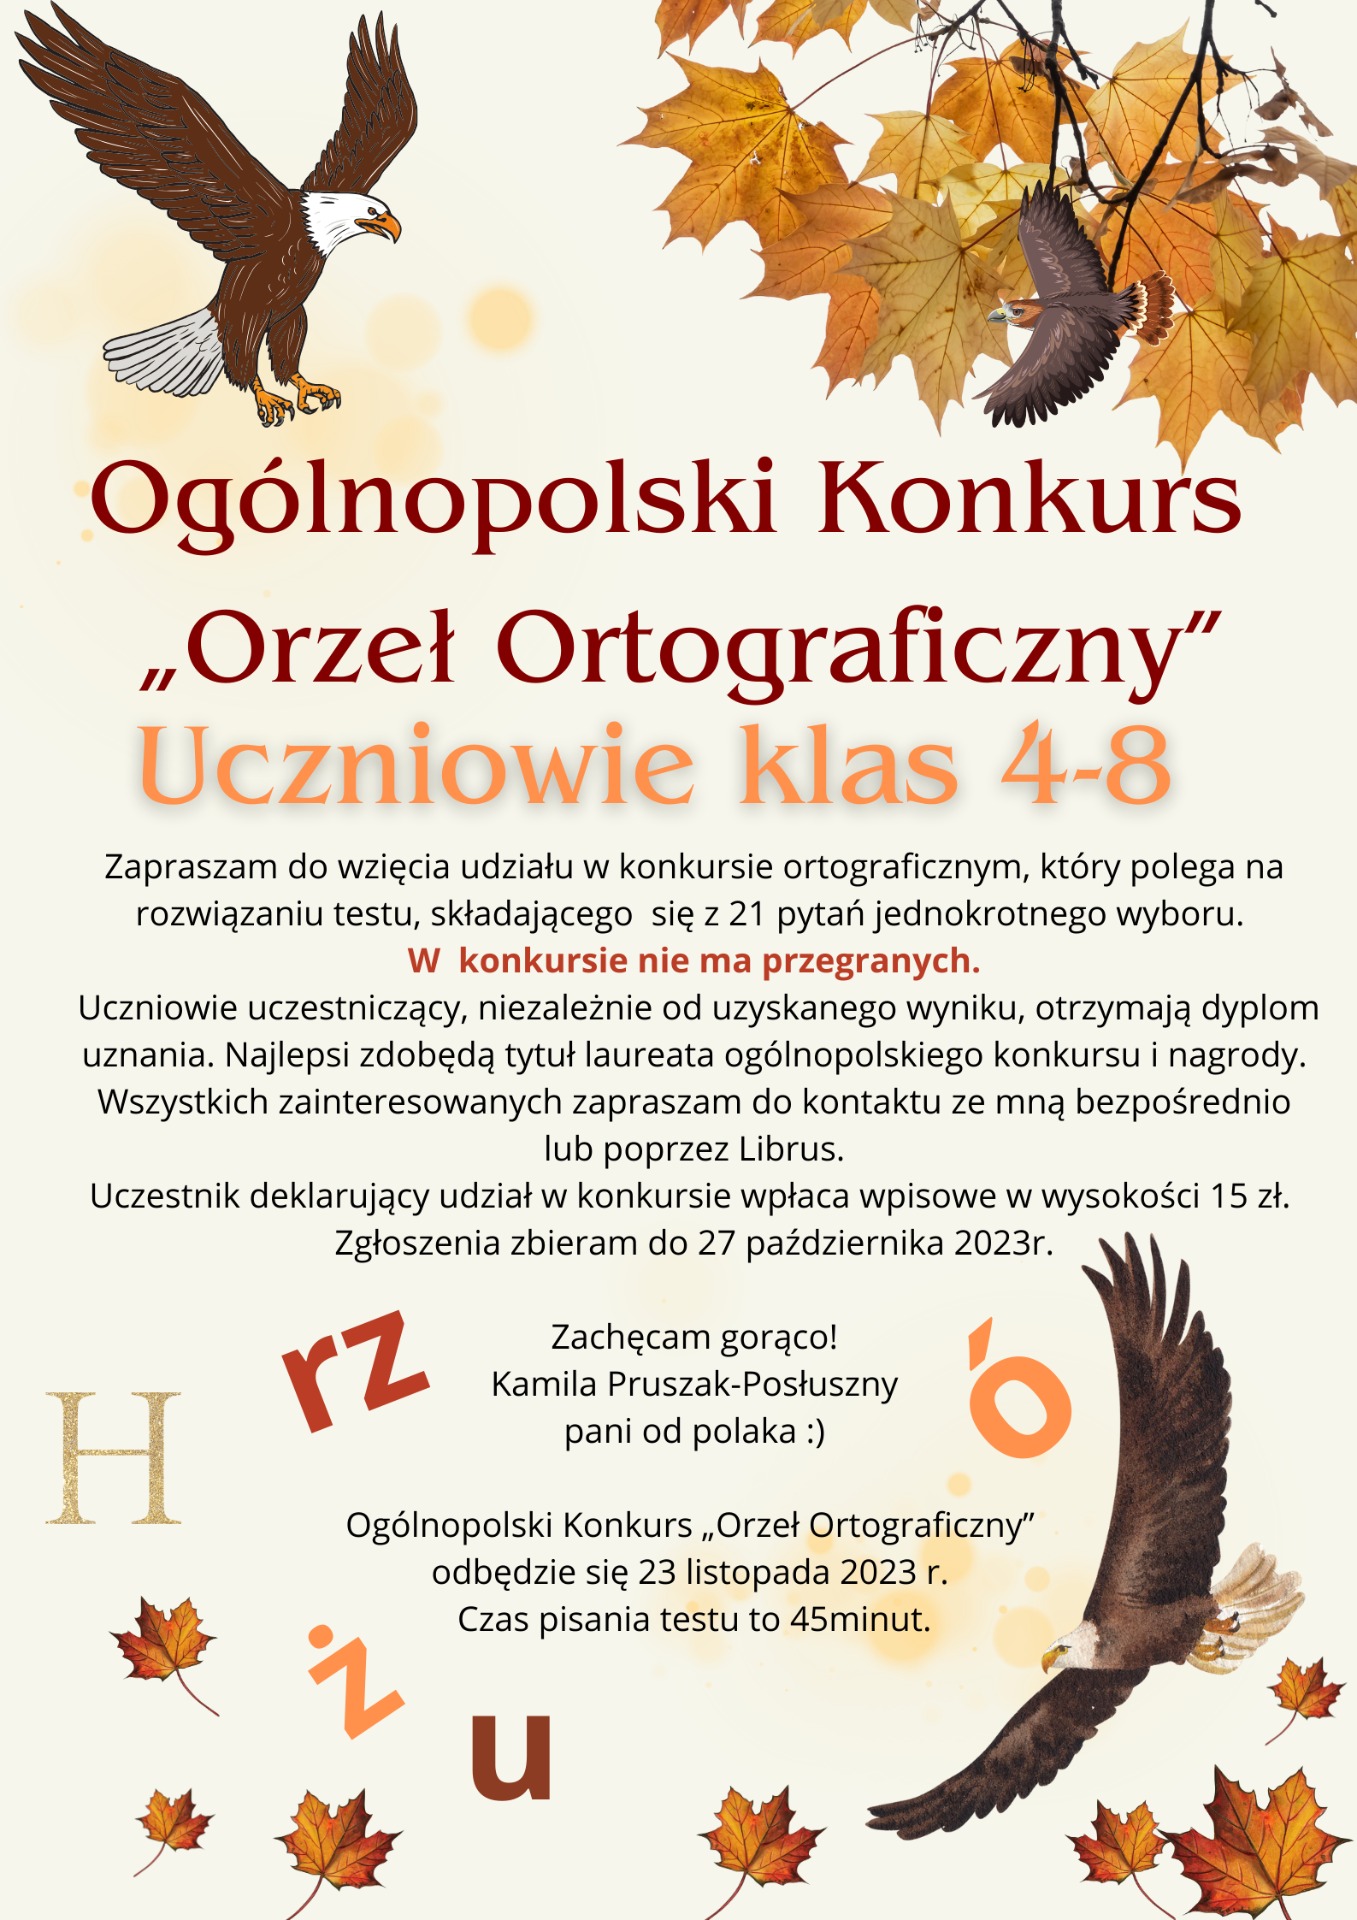 Ogólnopolski Konkurs "Orzeł ortograficzny" - Obrazek 1